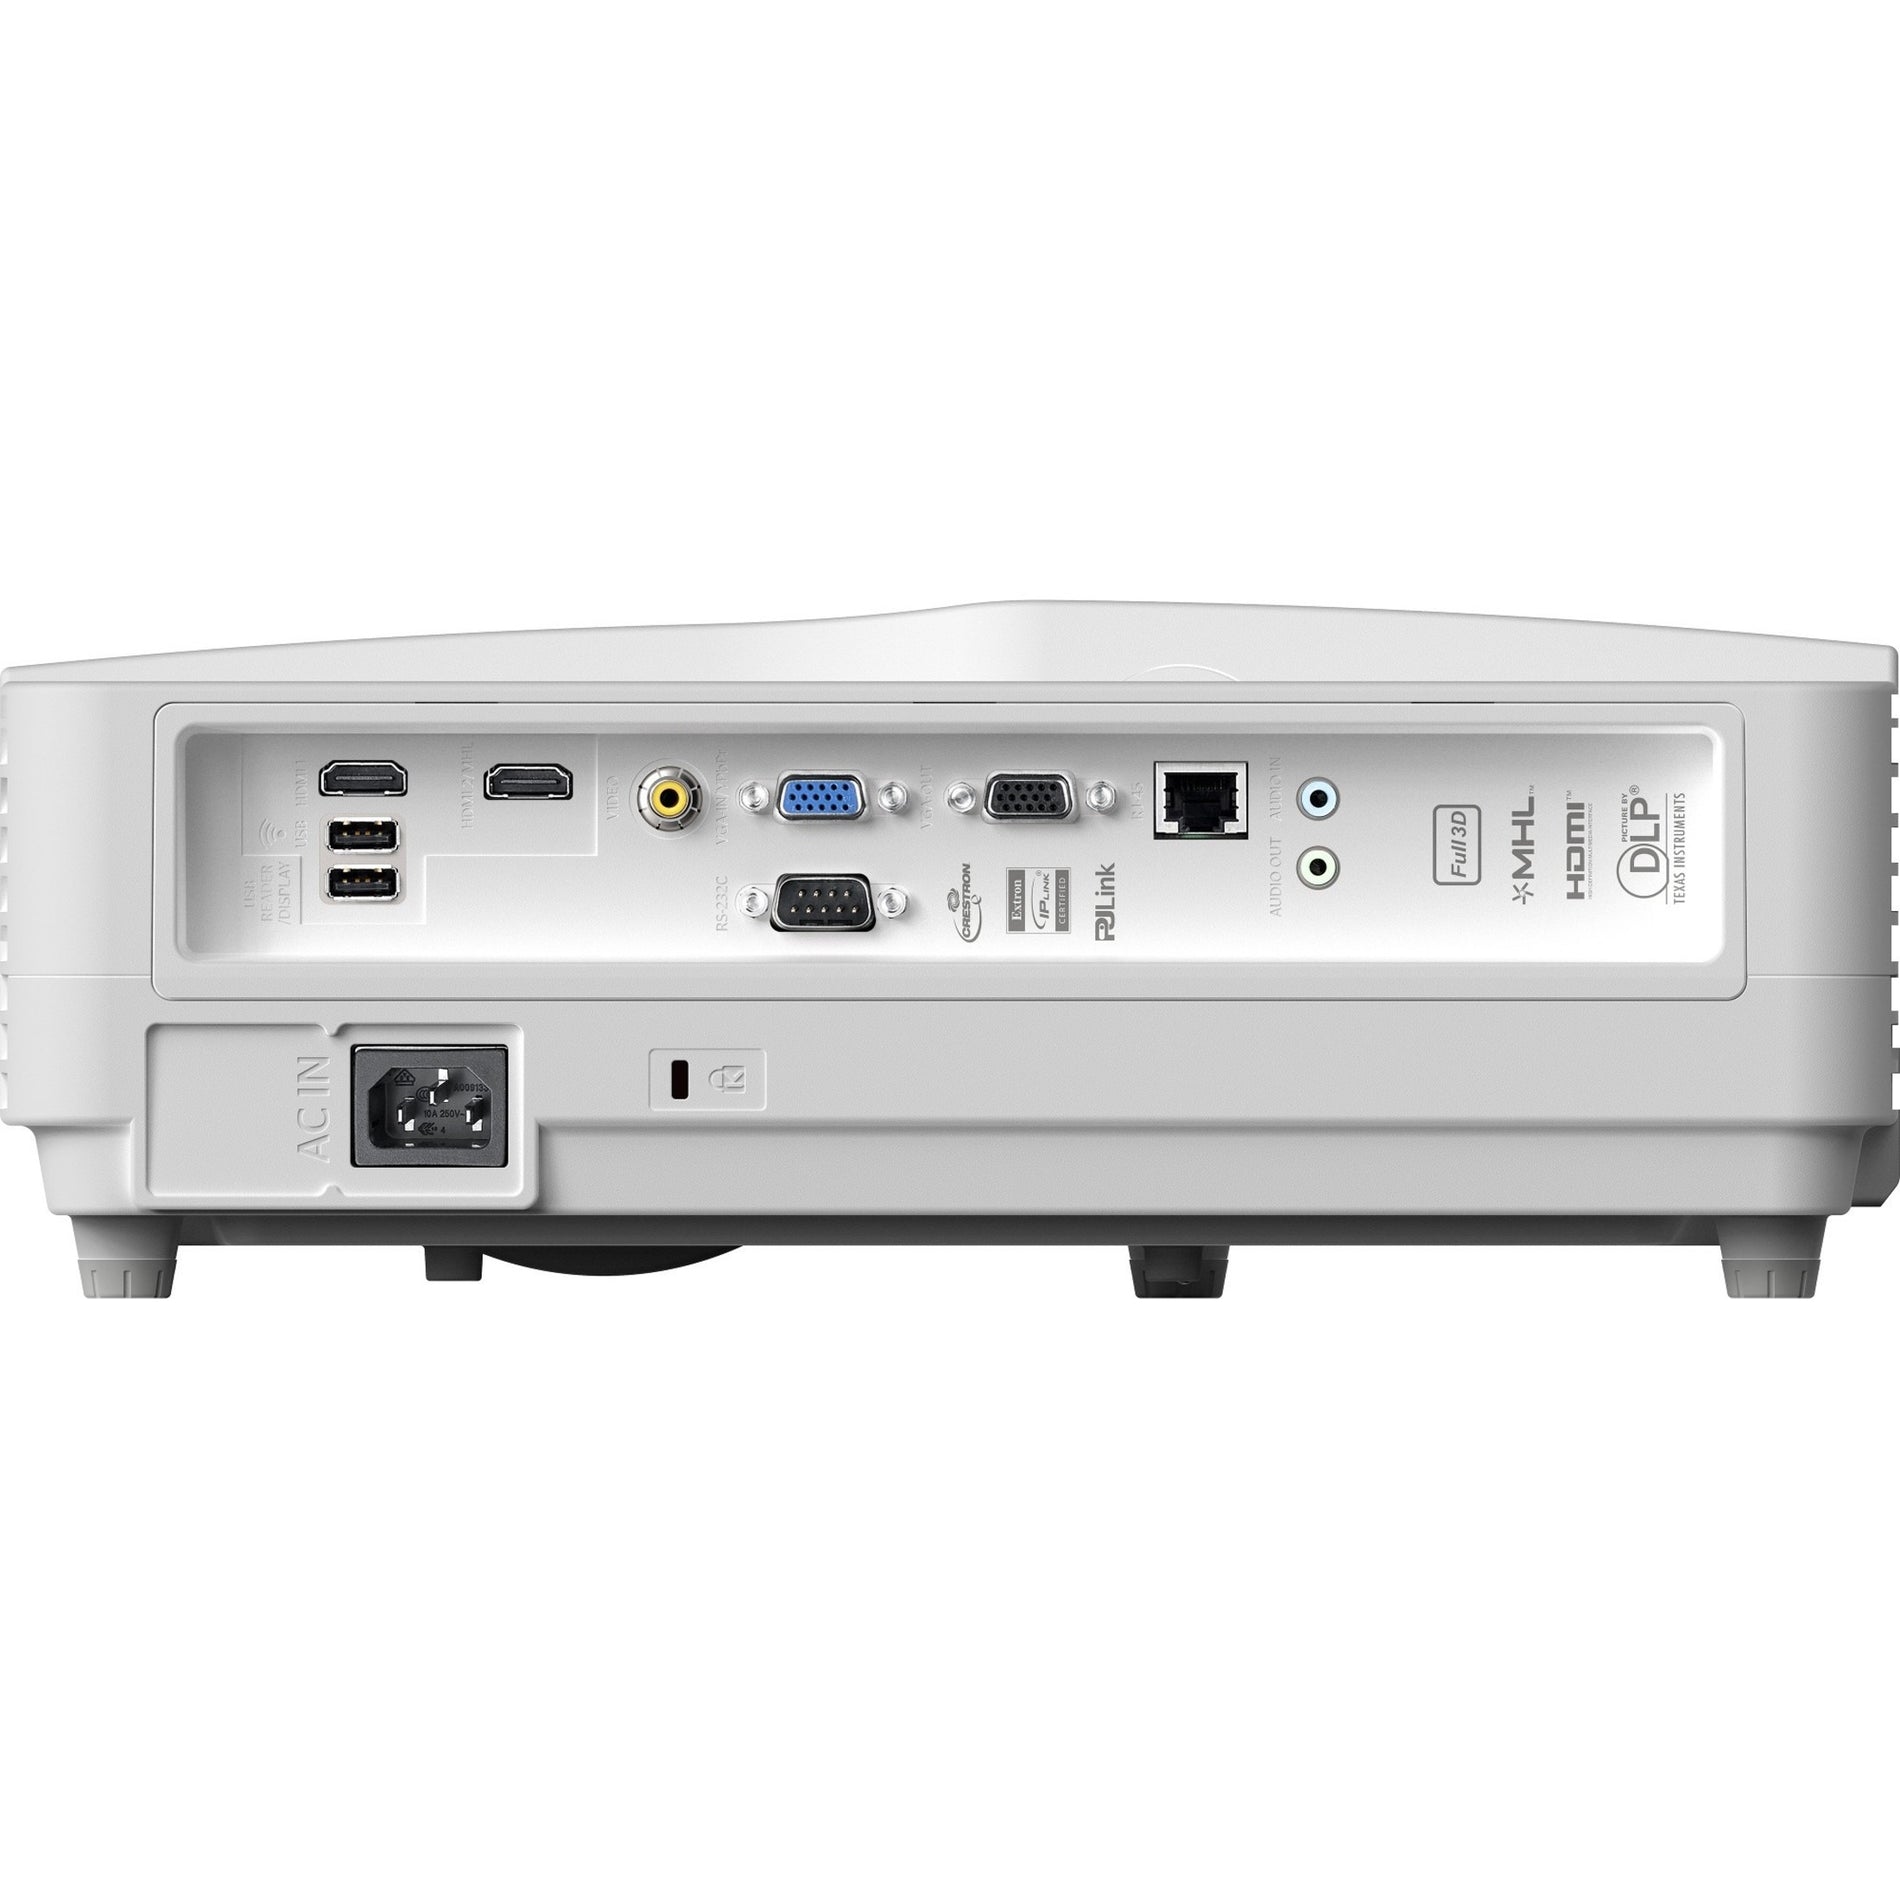 أوبتوما GT5600 جهاز عرض DLP ذو إمكانية إخراج فائقة - عالية الجودة، 3600 lm، ثلاثي الأبعاد، LAN لاسلكي